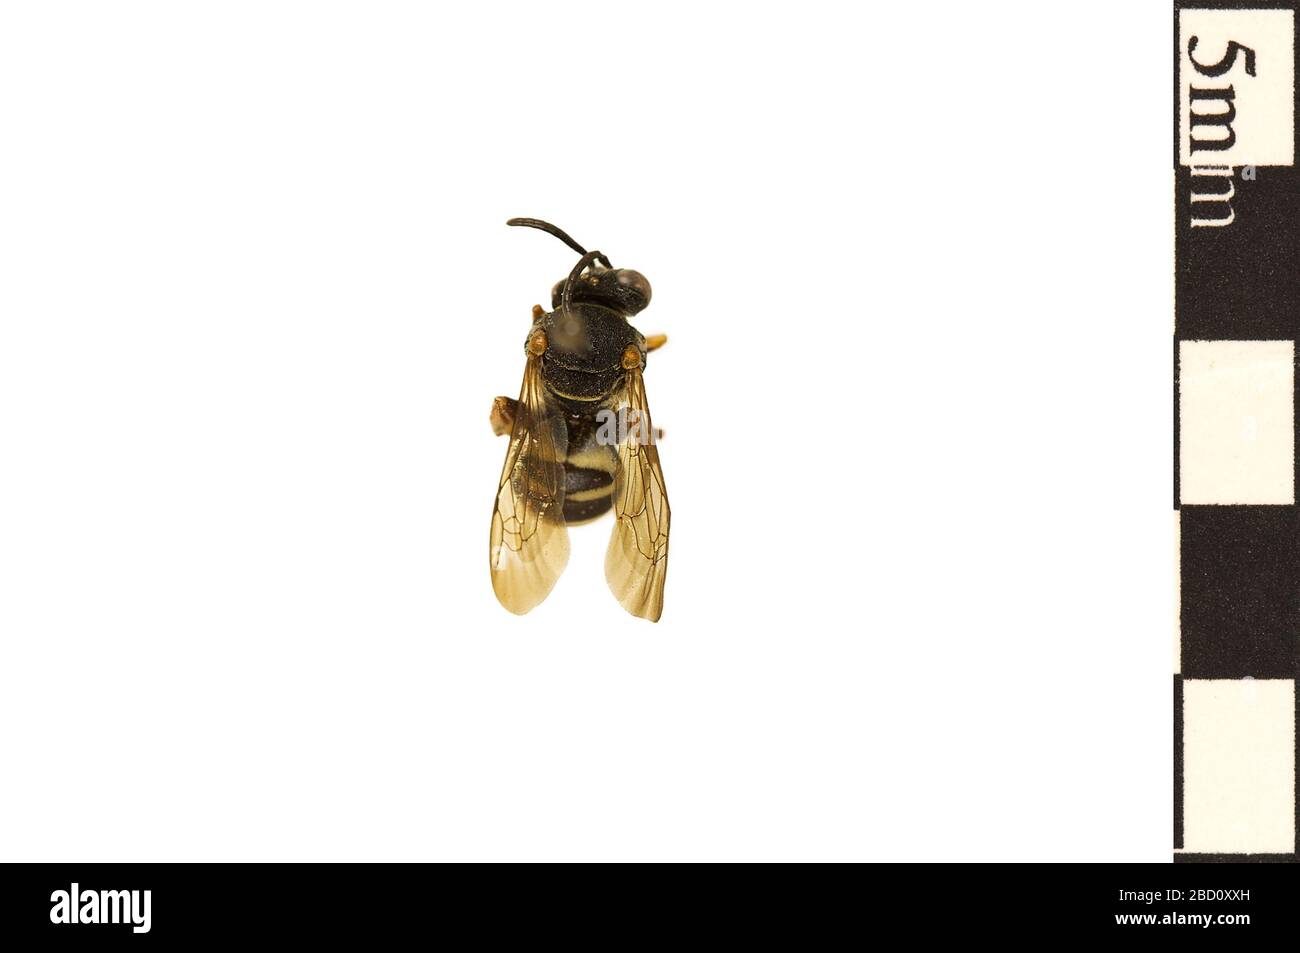 Cuckoo Bee. EO 022178 Cuckoo Bee Epeolus autumnalis 001.jpg Stock Photo